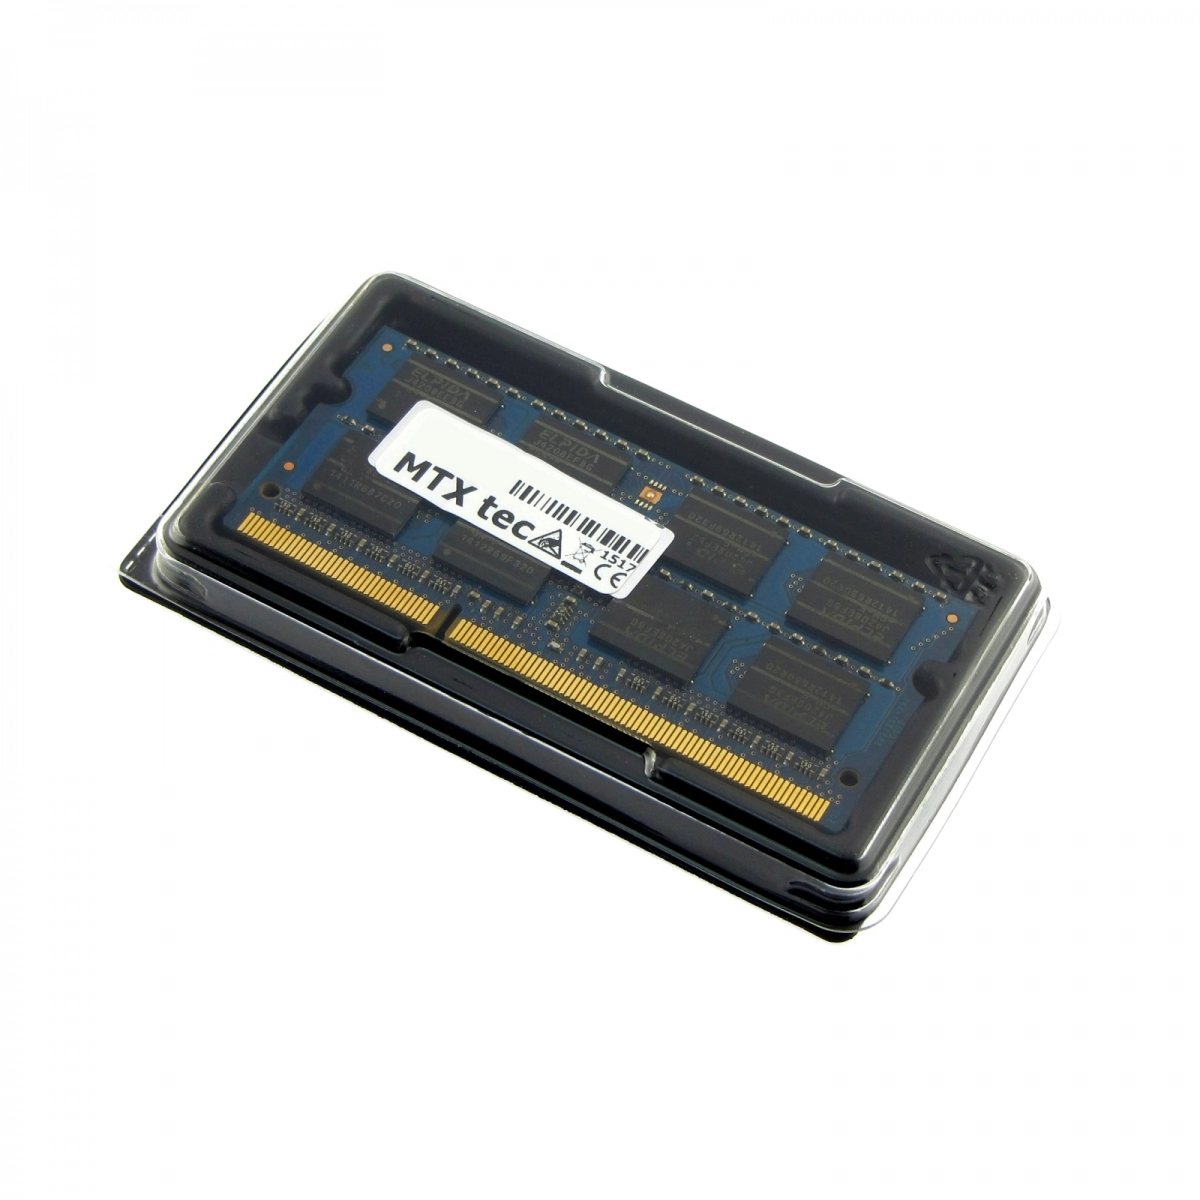 MTXtec Arbeitsspeicher 4 GB RAM für MEDION Akoya E7420 MD99830